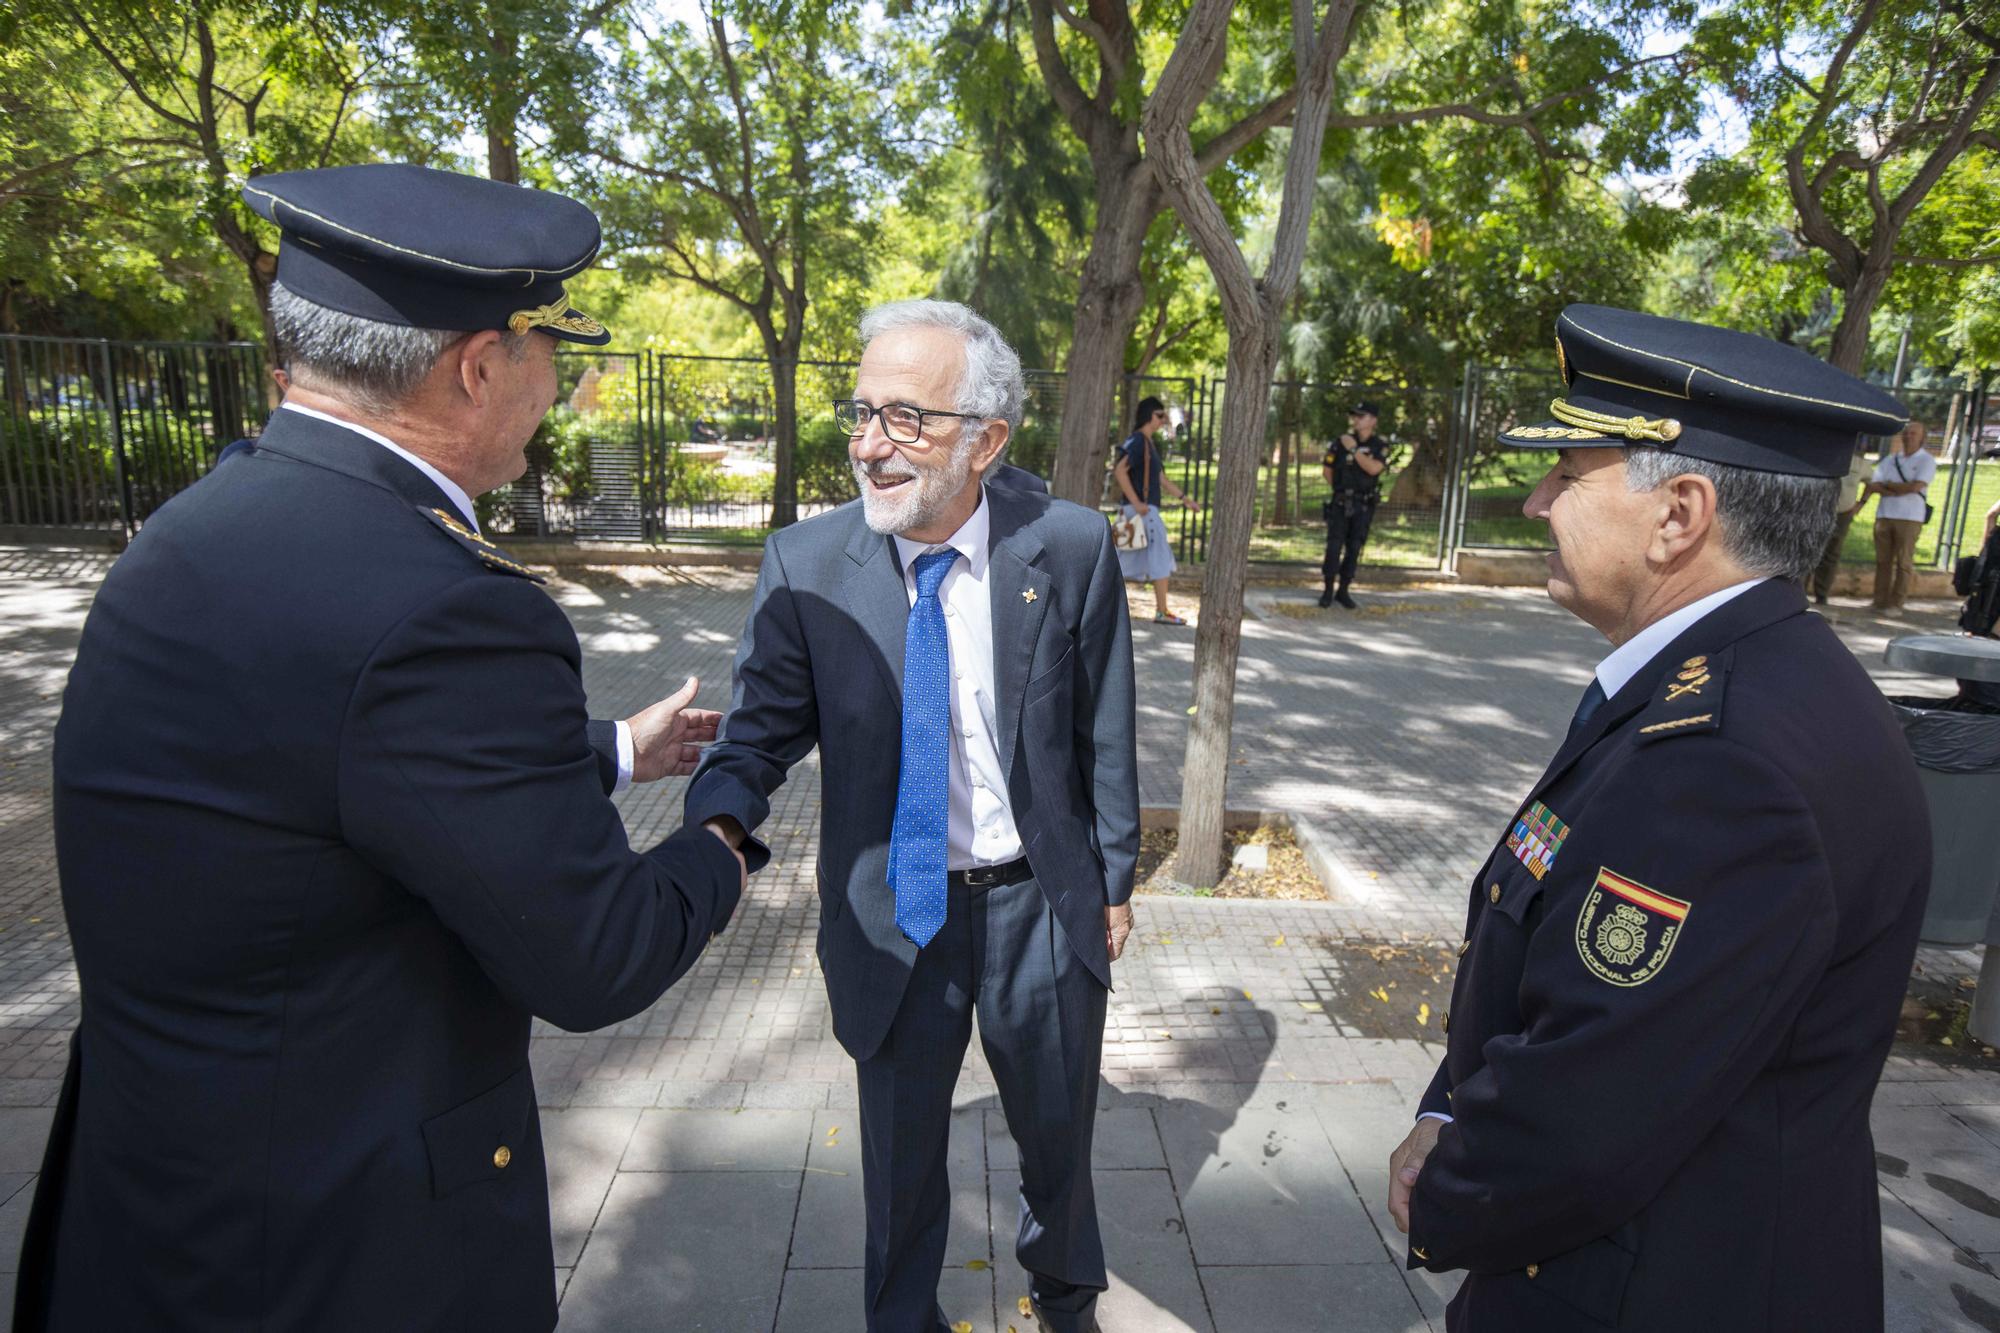 El comisario José Luis Santafé toma posesión del cargo de jefe superior de Policía de Baleares